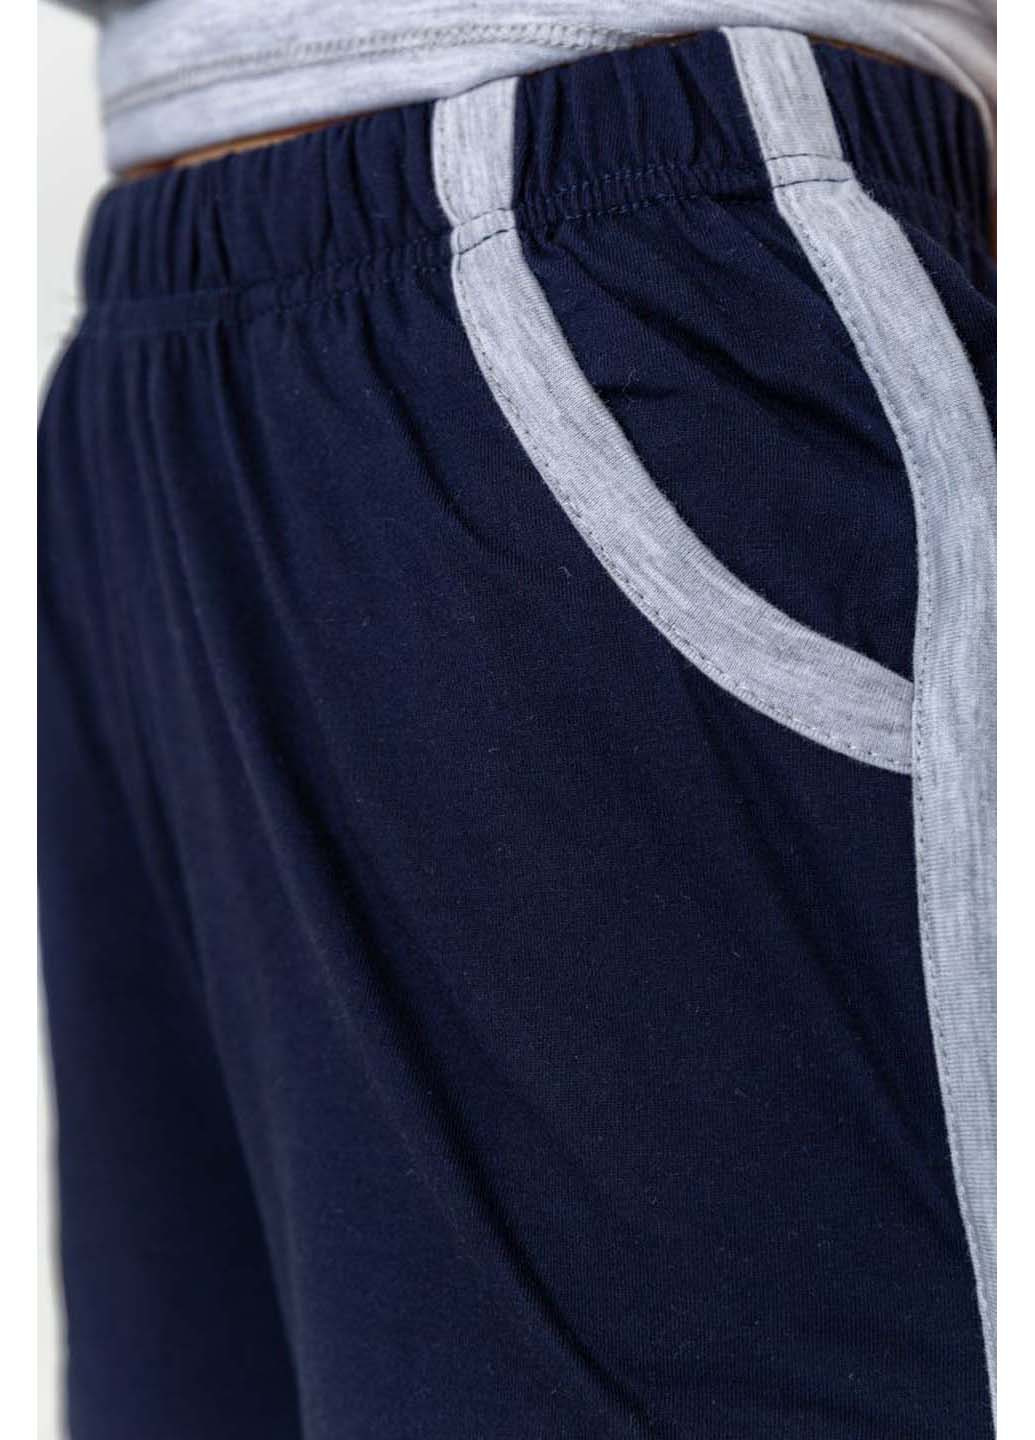 Комбинированная всесезон пижама Ager